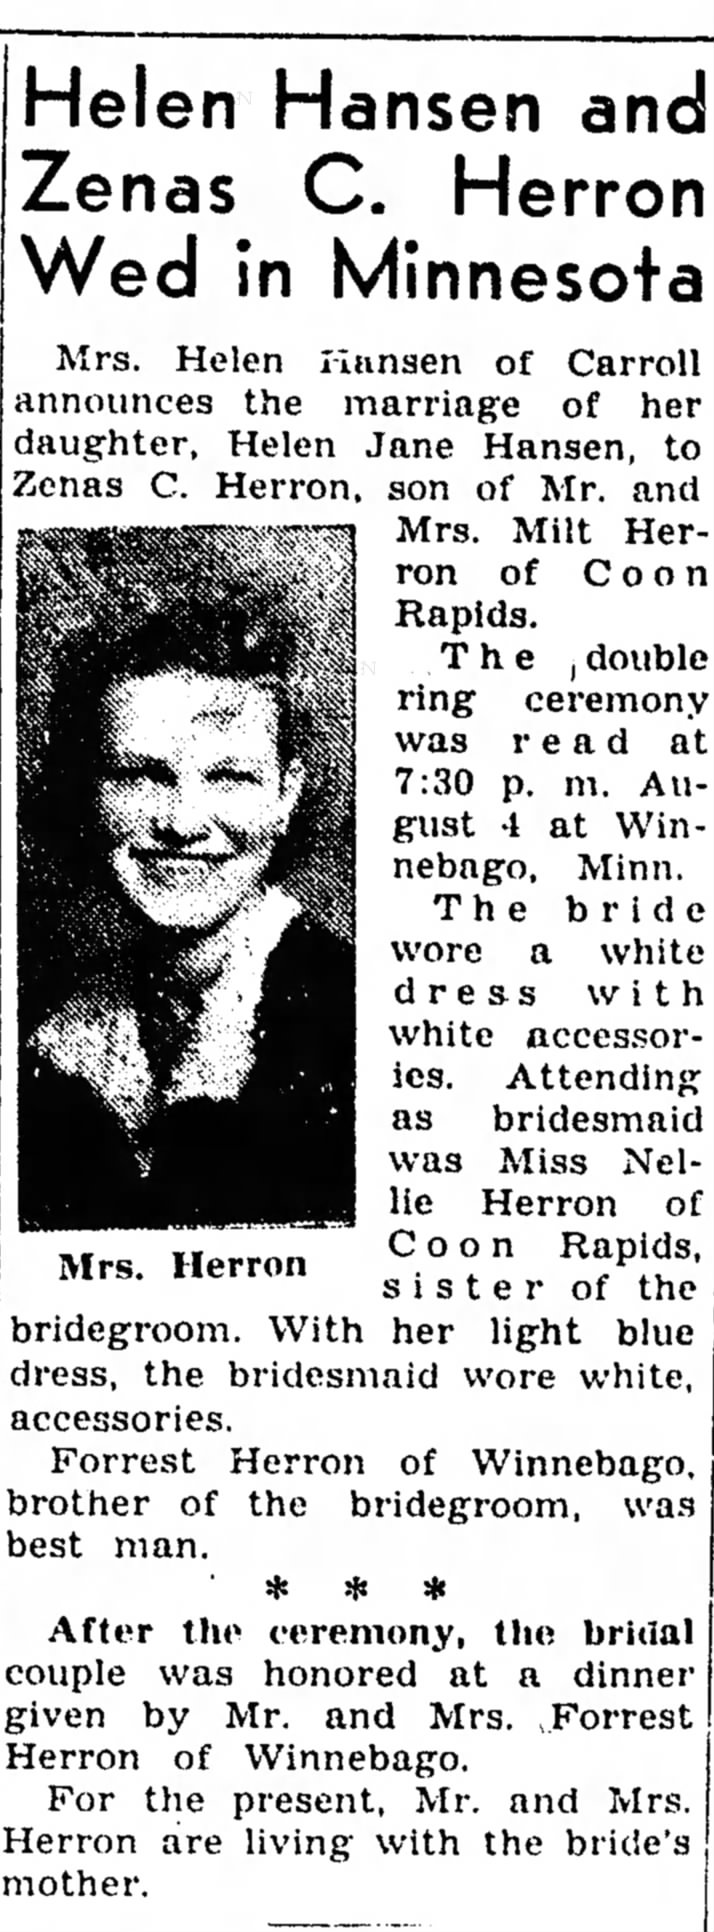 Milt Herron weds Helen Jane Hansen in Minn.1946